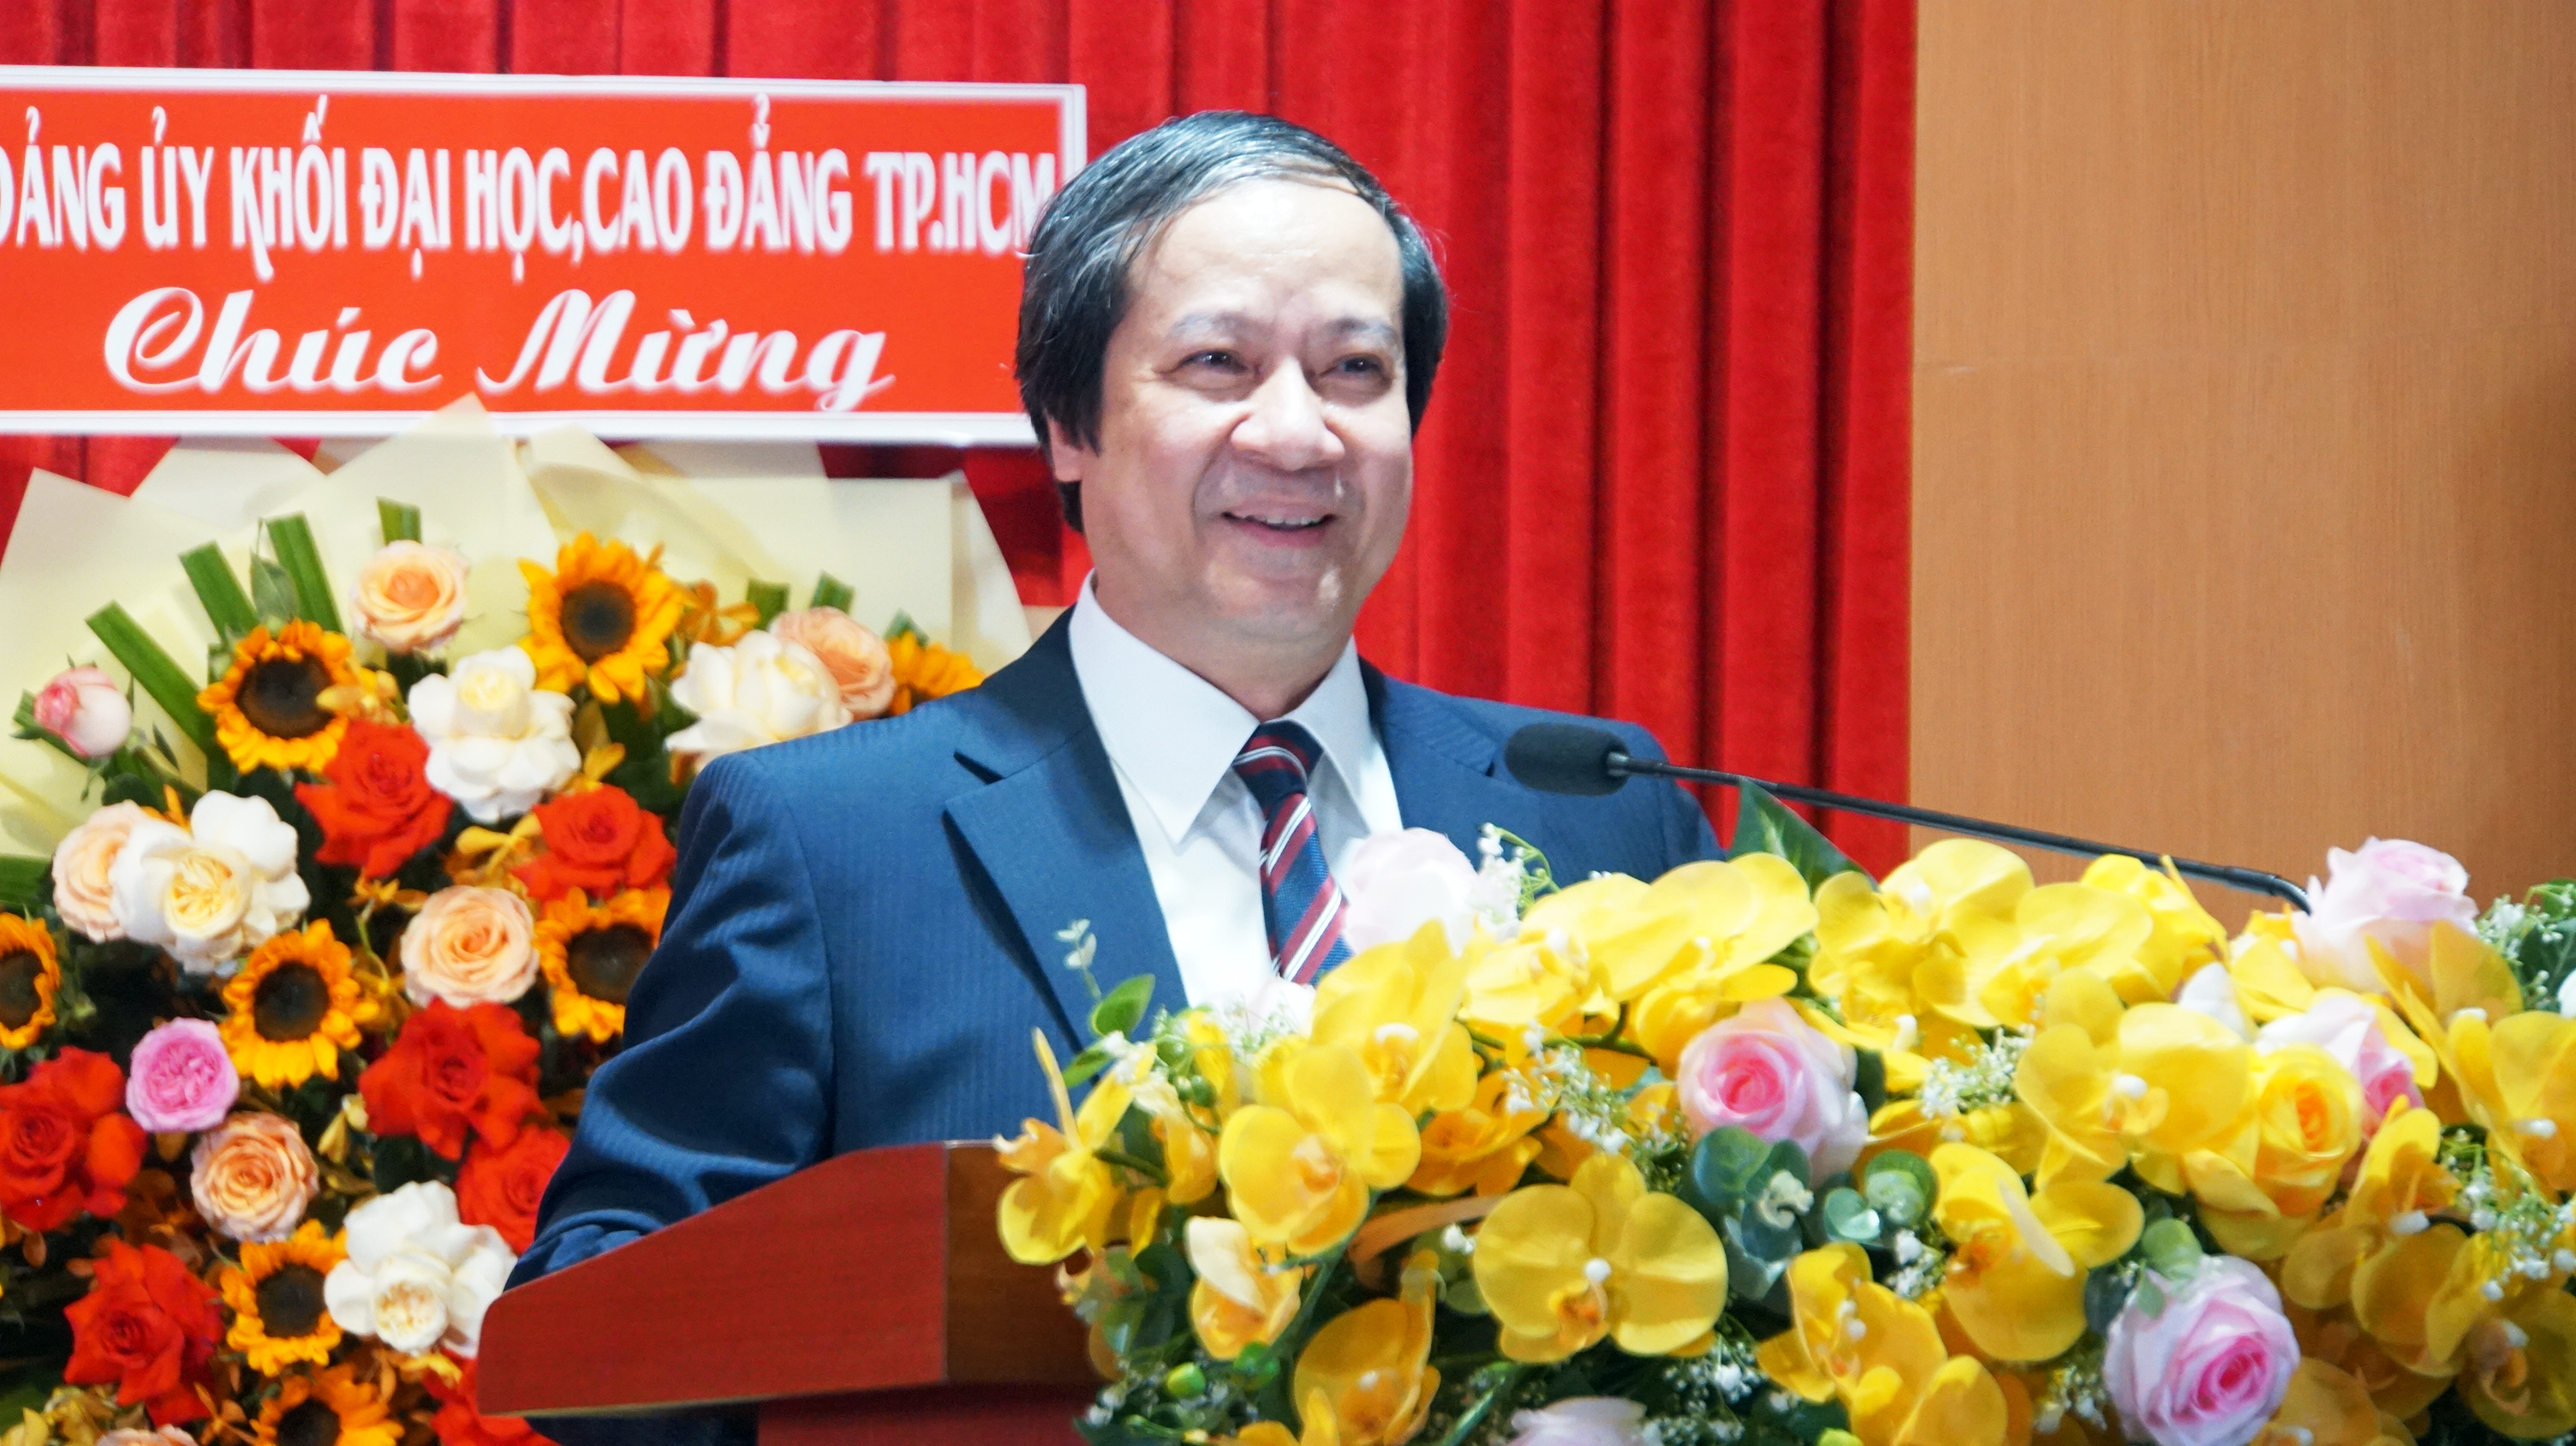 Bộ trưởng Nguyễn Kim Sơn phát biểu tại buổi lễ. Ảnh: Mạnh Tùng